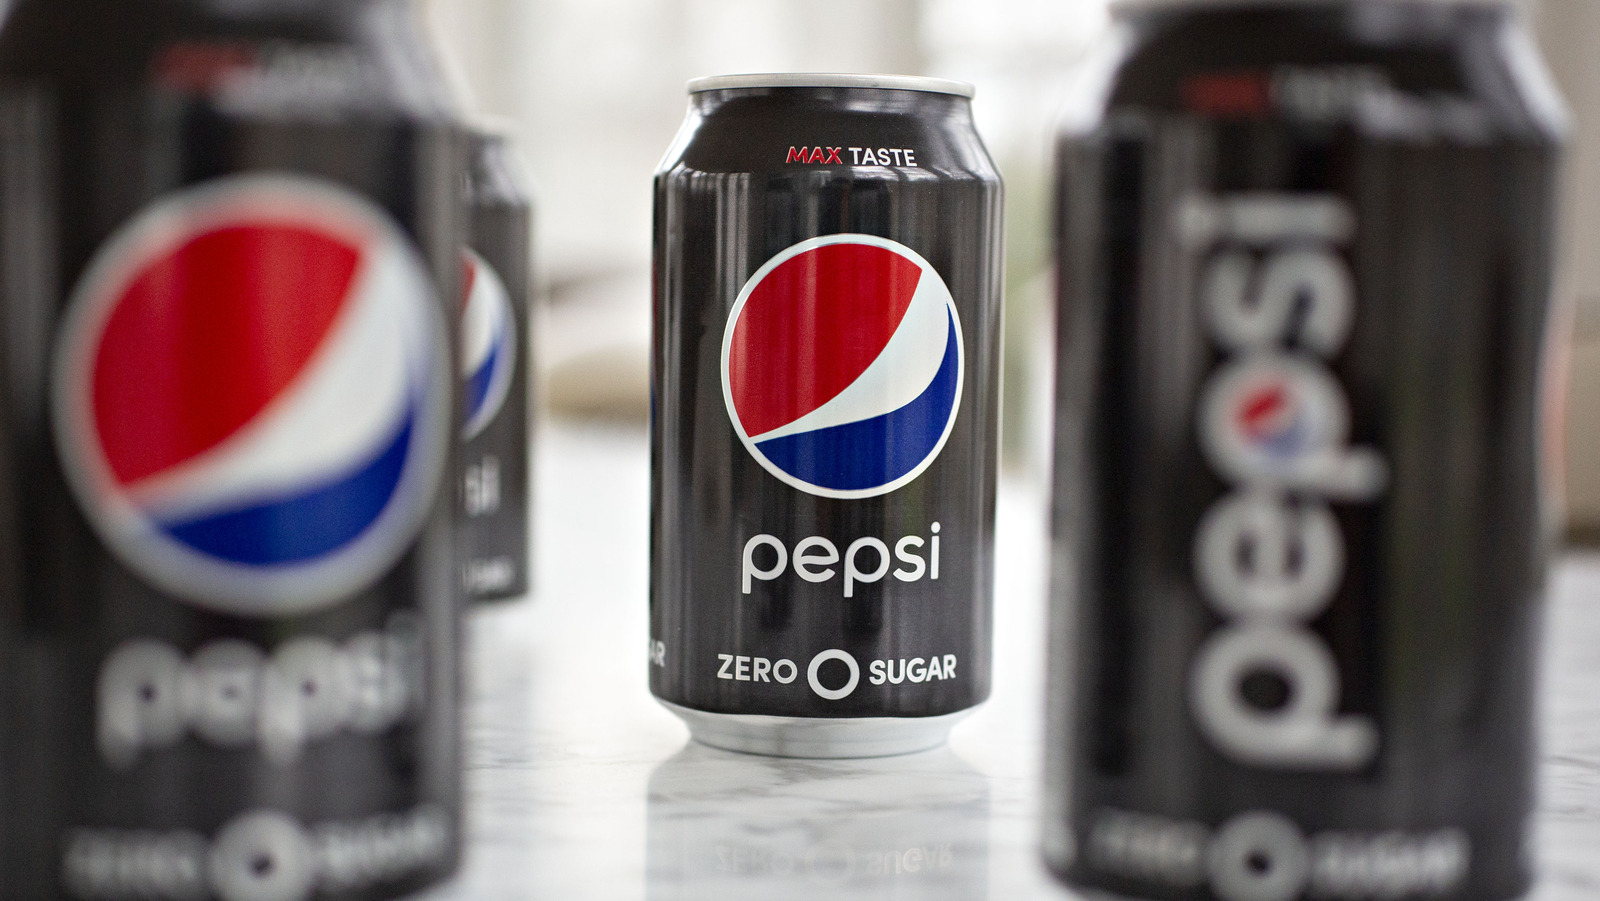 Pepsi's Refreshed Zero Sugar Recipe Claims Its Boldest Taste Yet